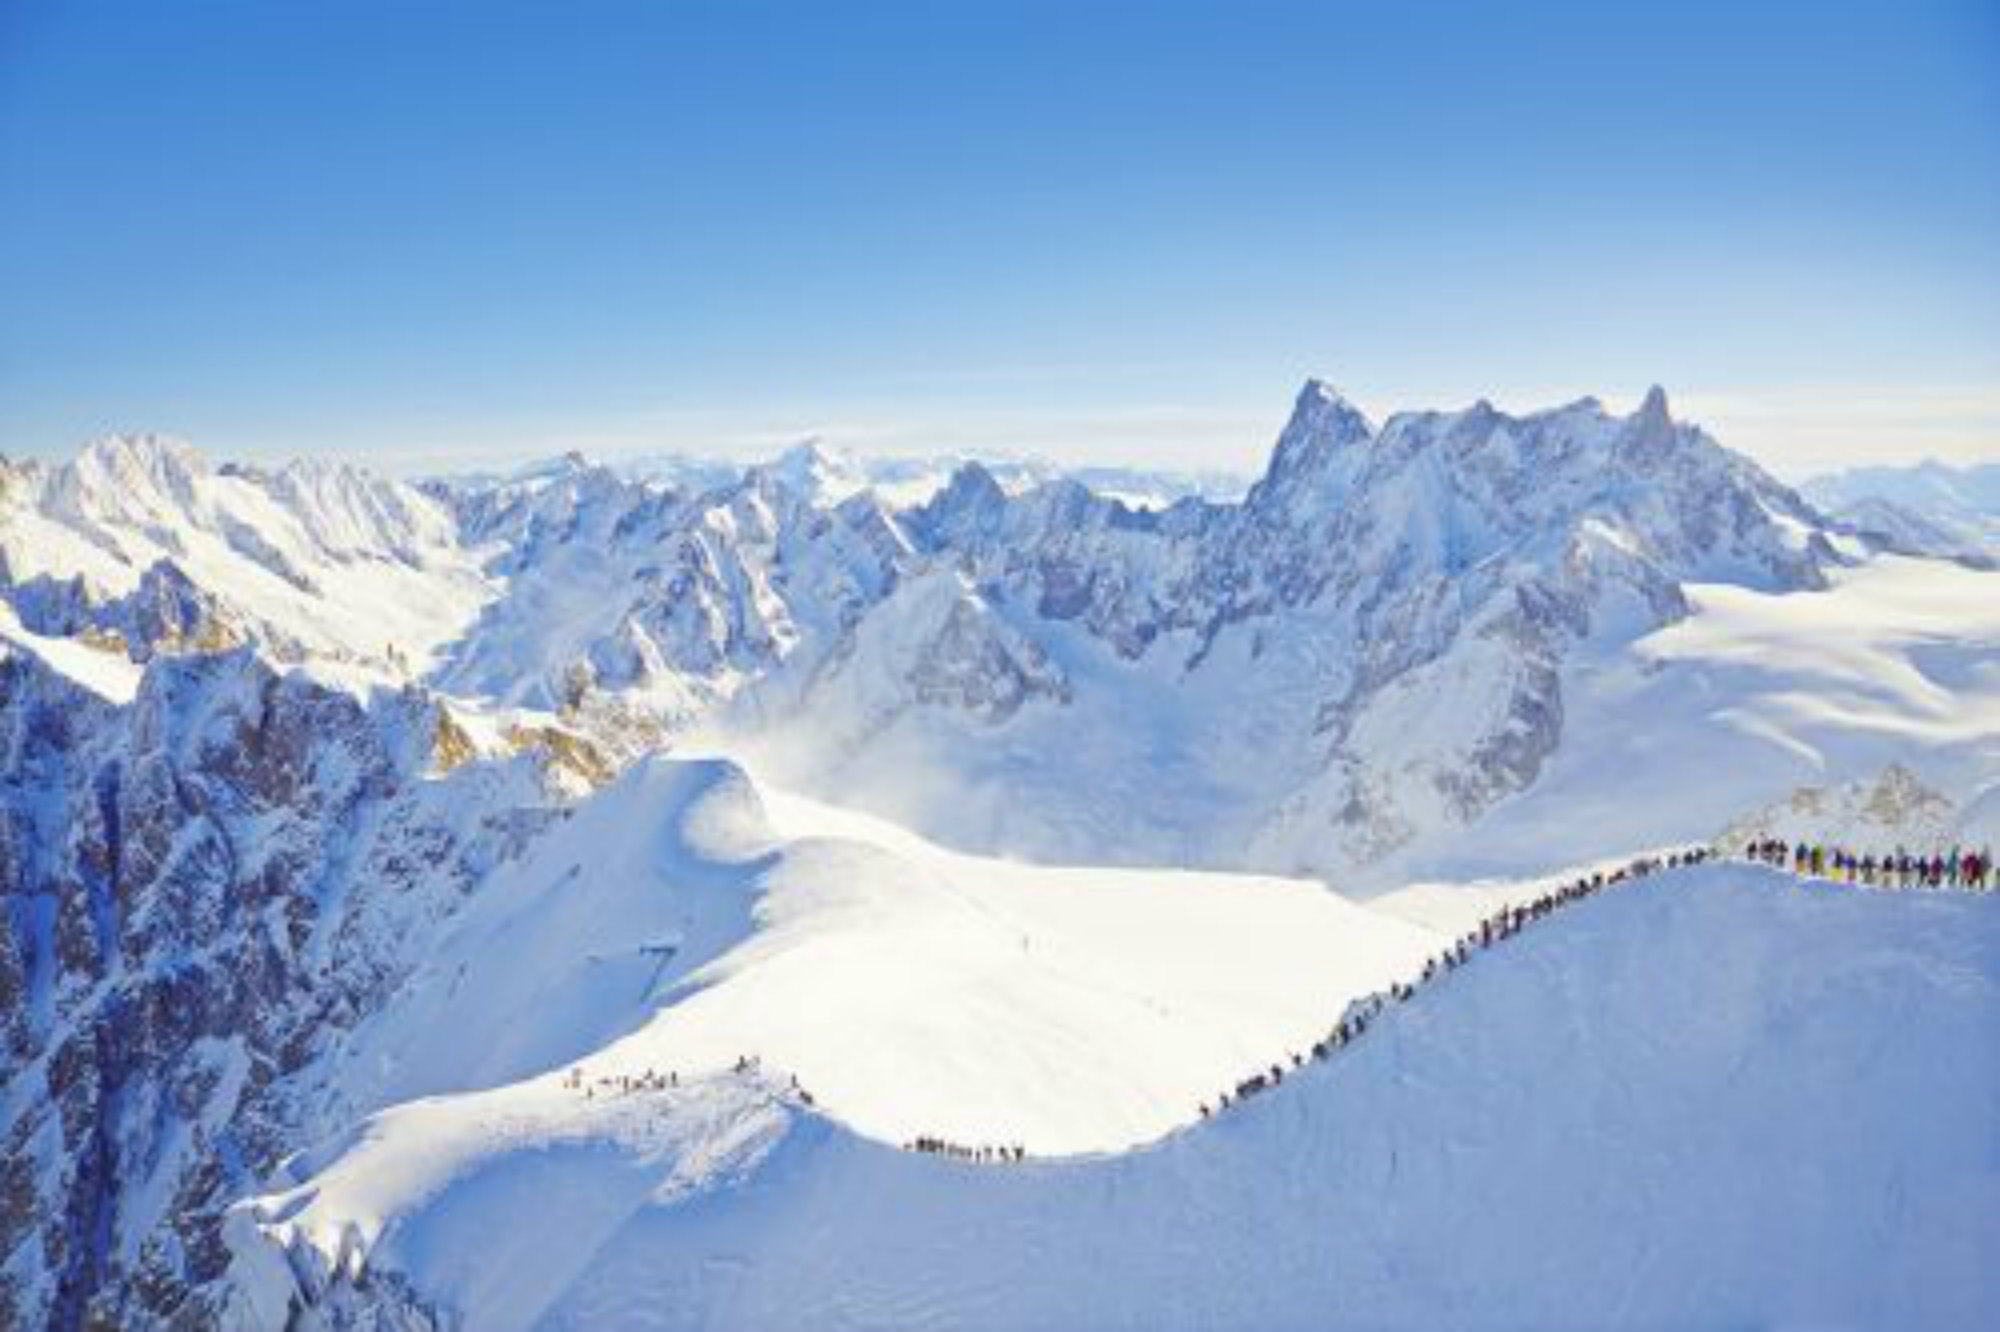 Des skieurs descendent la crête de l’Aiguille du Midi avant de se lancer dans la descente de la Vallée Blanche.